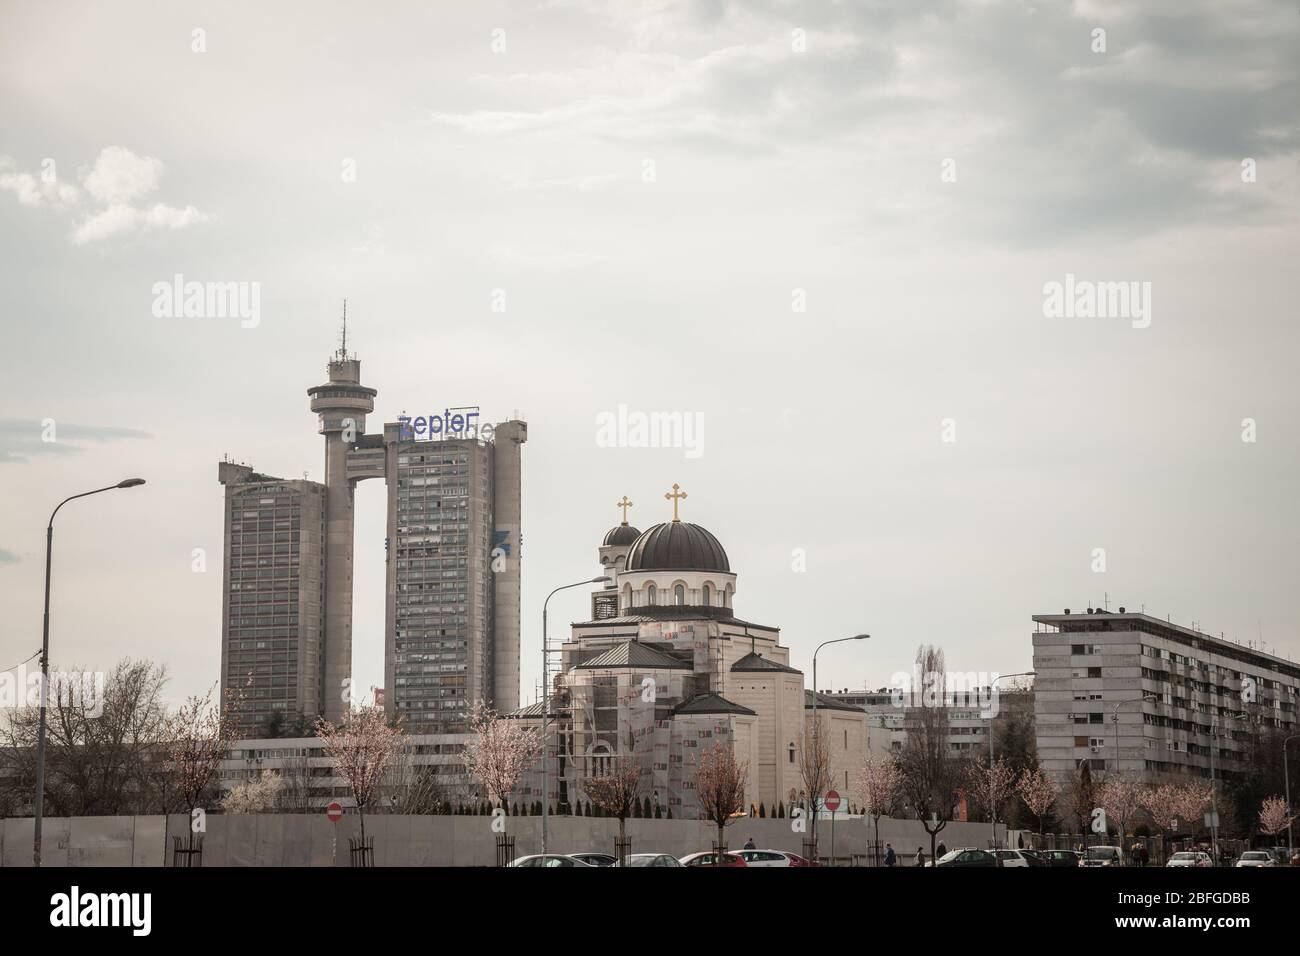 BELGRAD, SERBIEN - 30. MÄRZ 2018: Skyline von Novi beograd mit dem Westtor, auch Zapadna Kapija oder Genex-Turm genannt, und einem modernen orthodoxen Ch Stockfoto